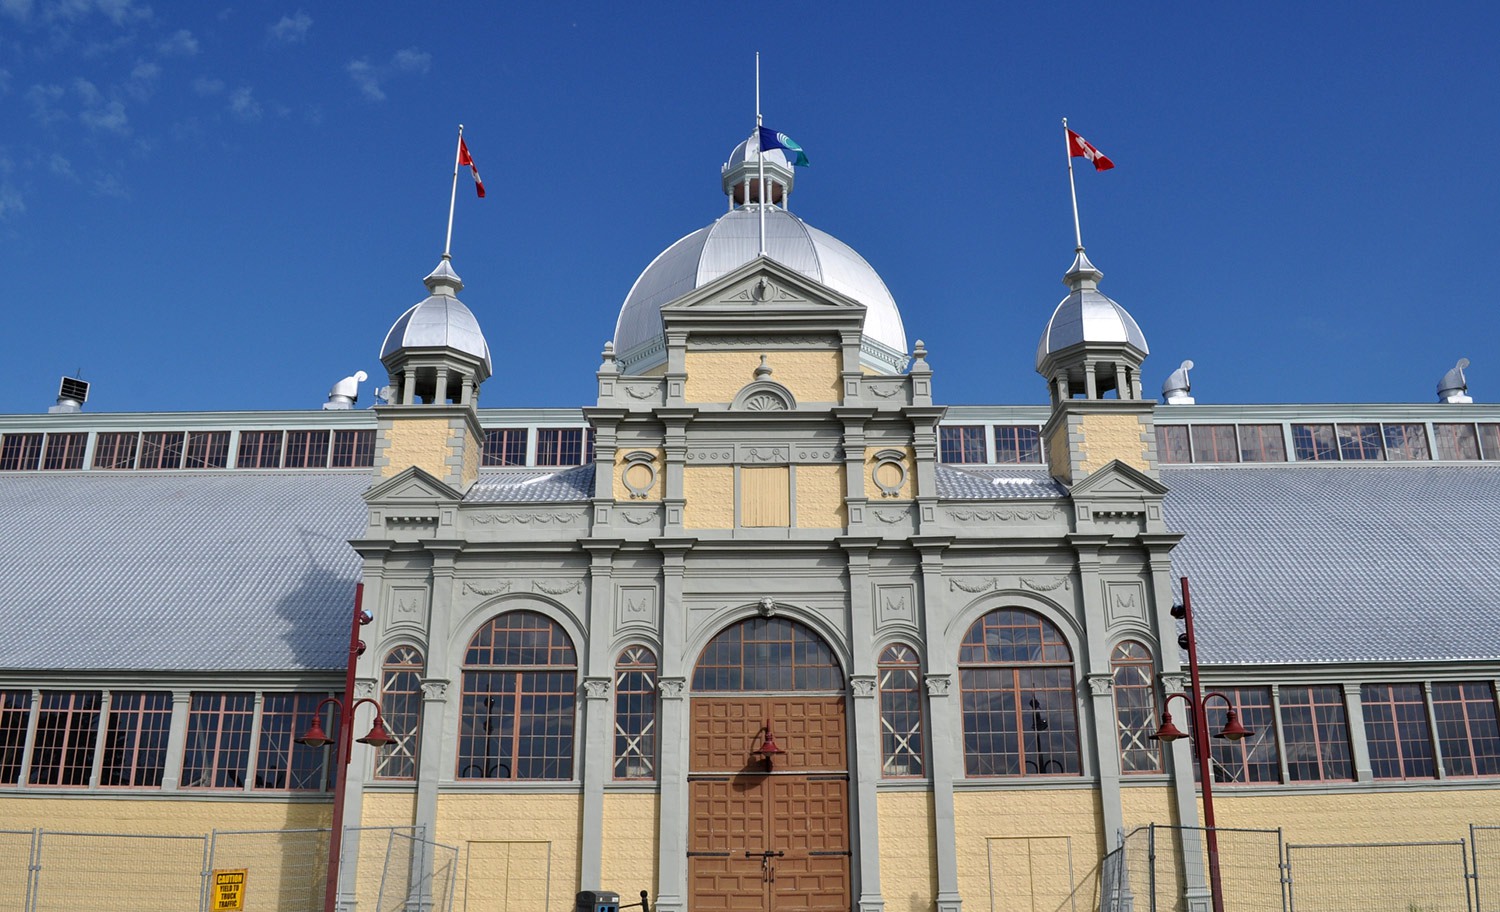 The Aberdeen Pavilion in Ottawa